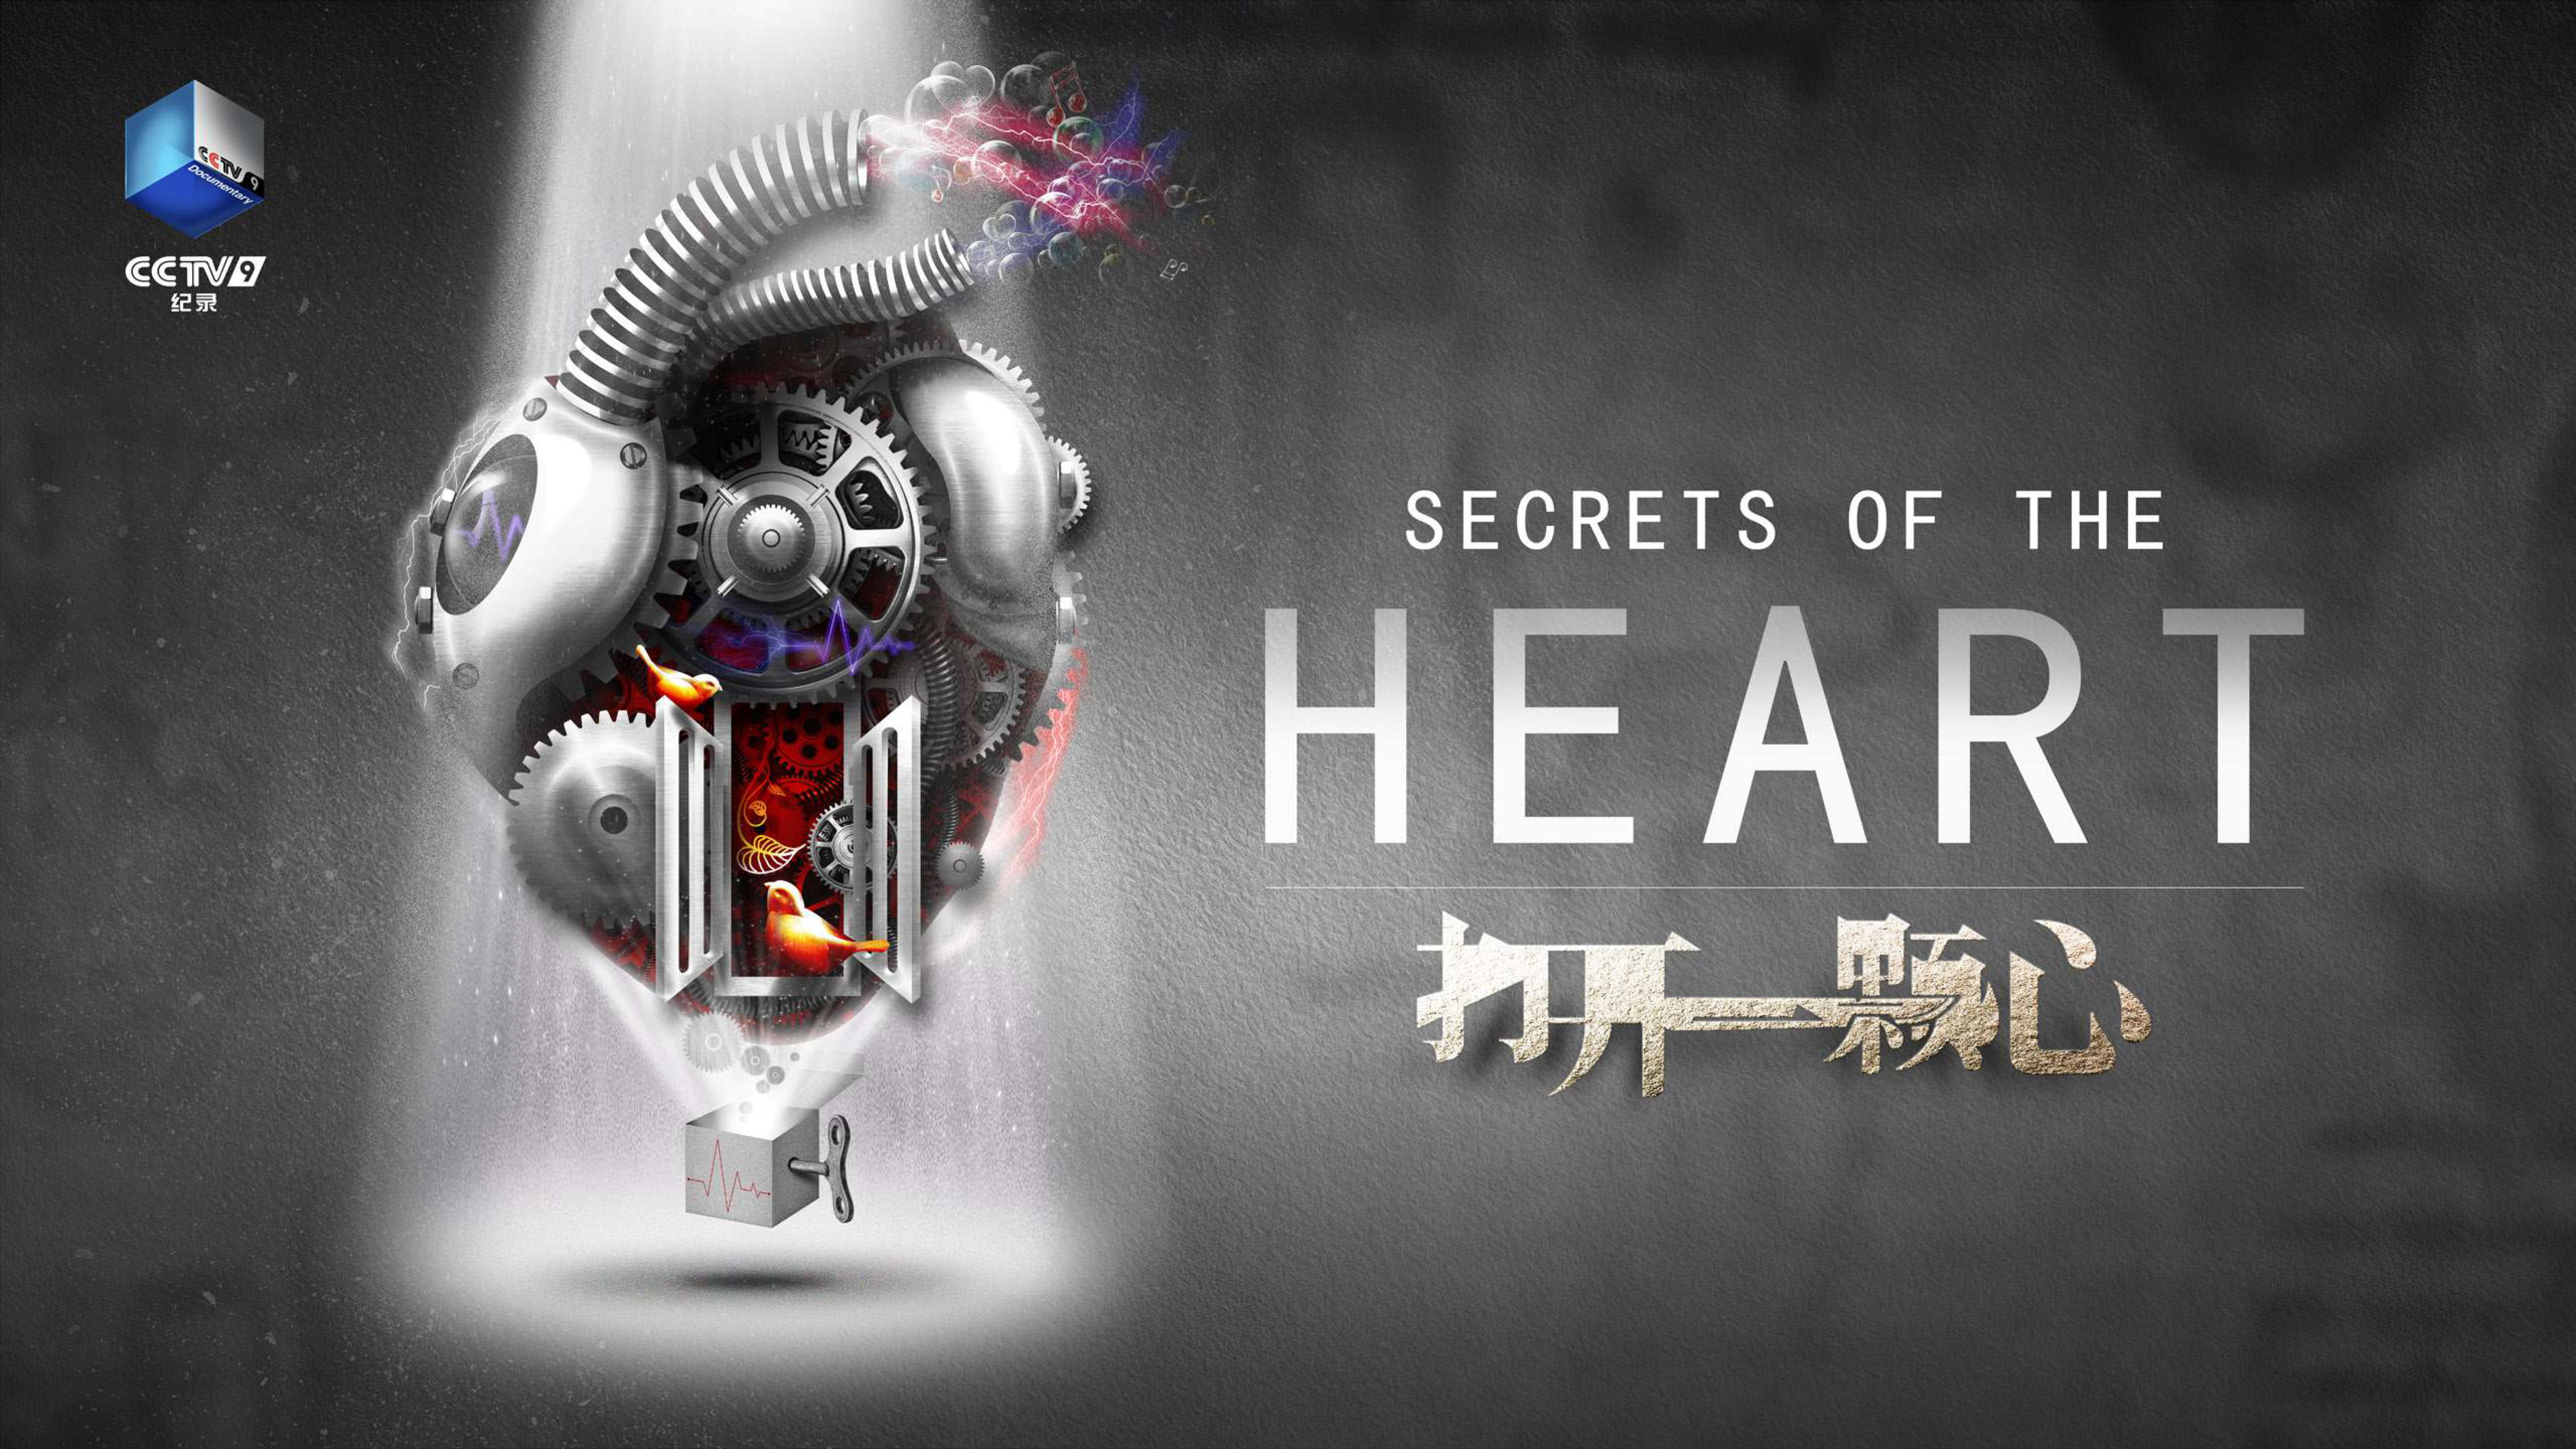 Secrets of the Heart - NYX Awards Winner 